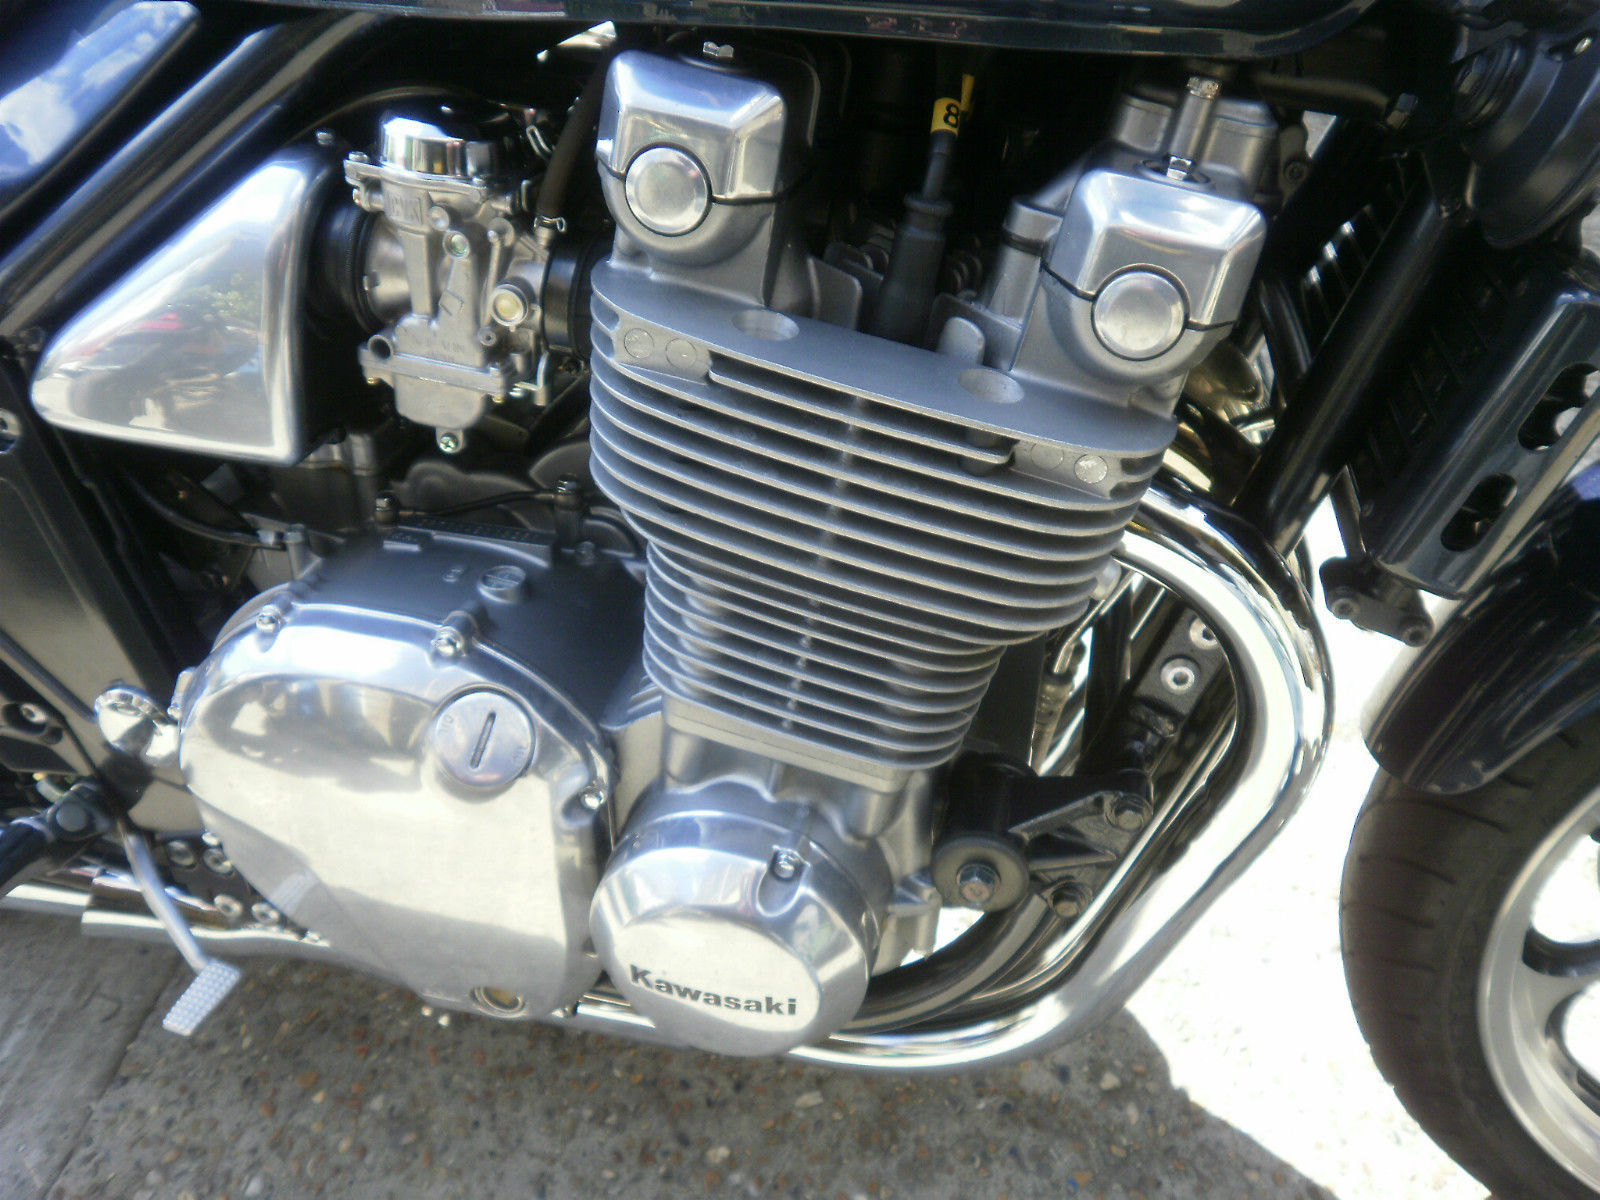 The Kawasaki ZR 1100 A2 Zephyr MotorBikeSpecs.net, Motorcycle Database